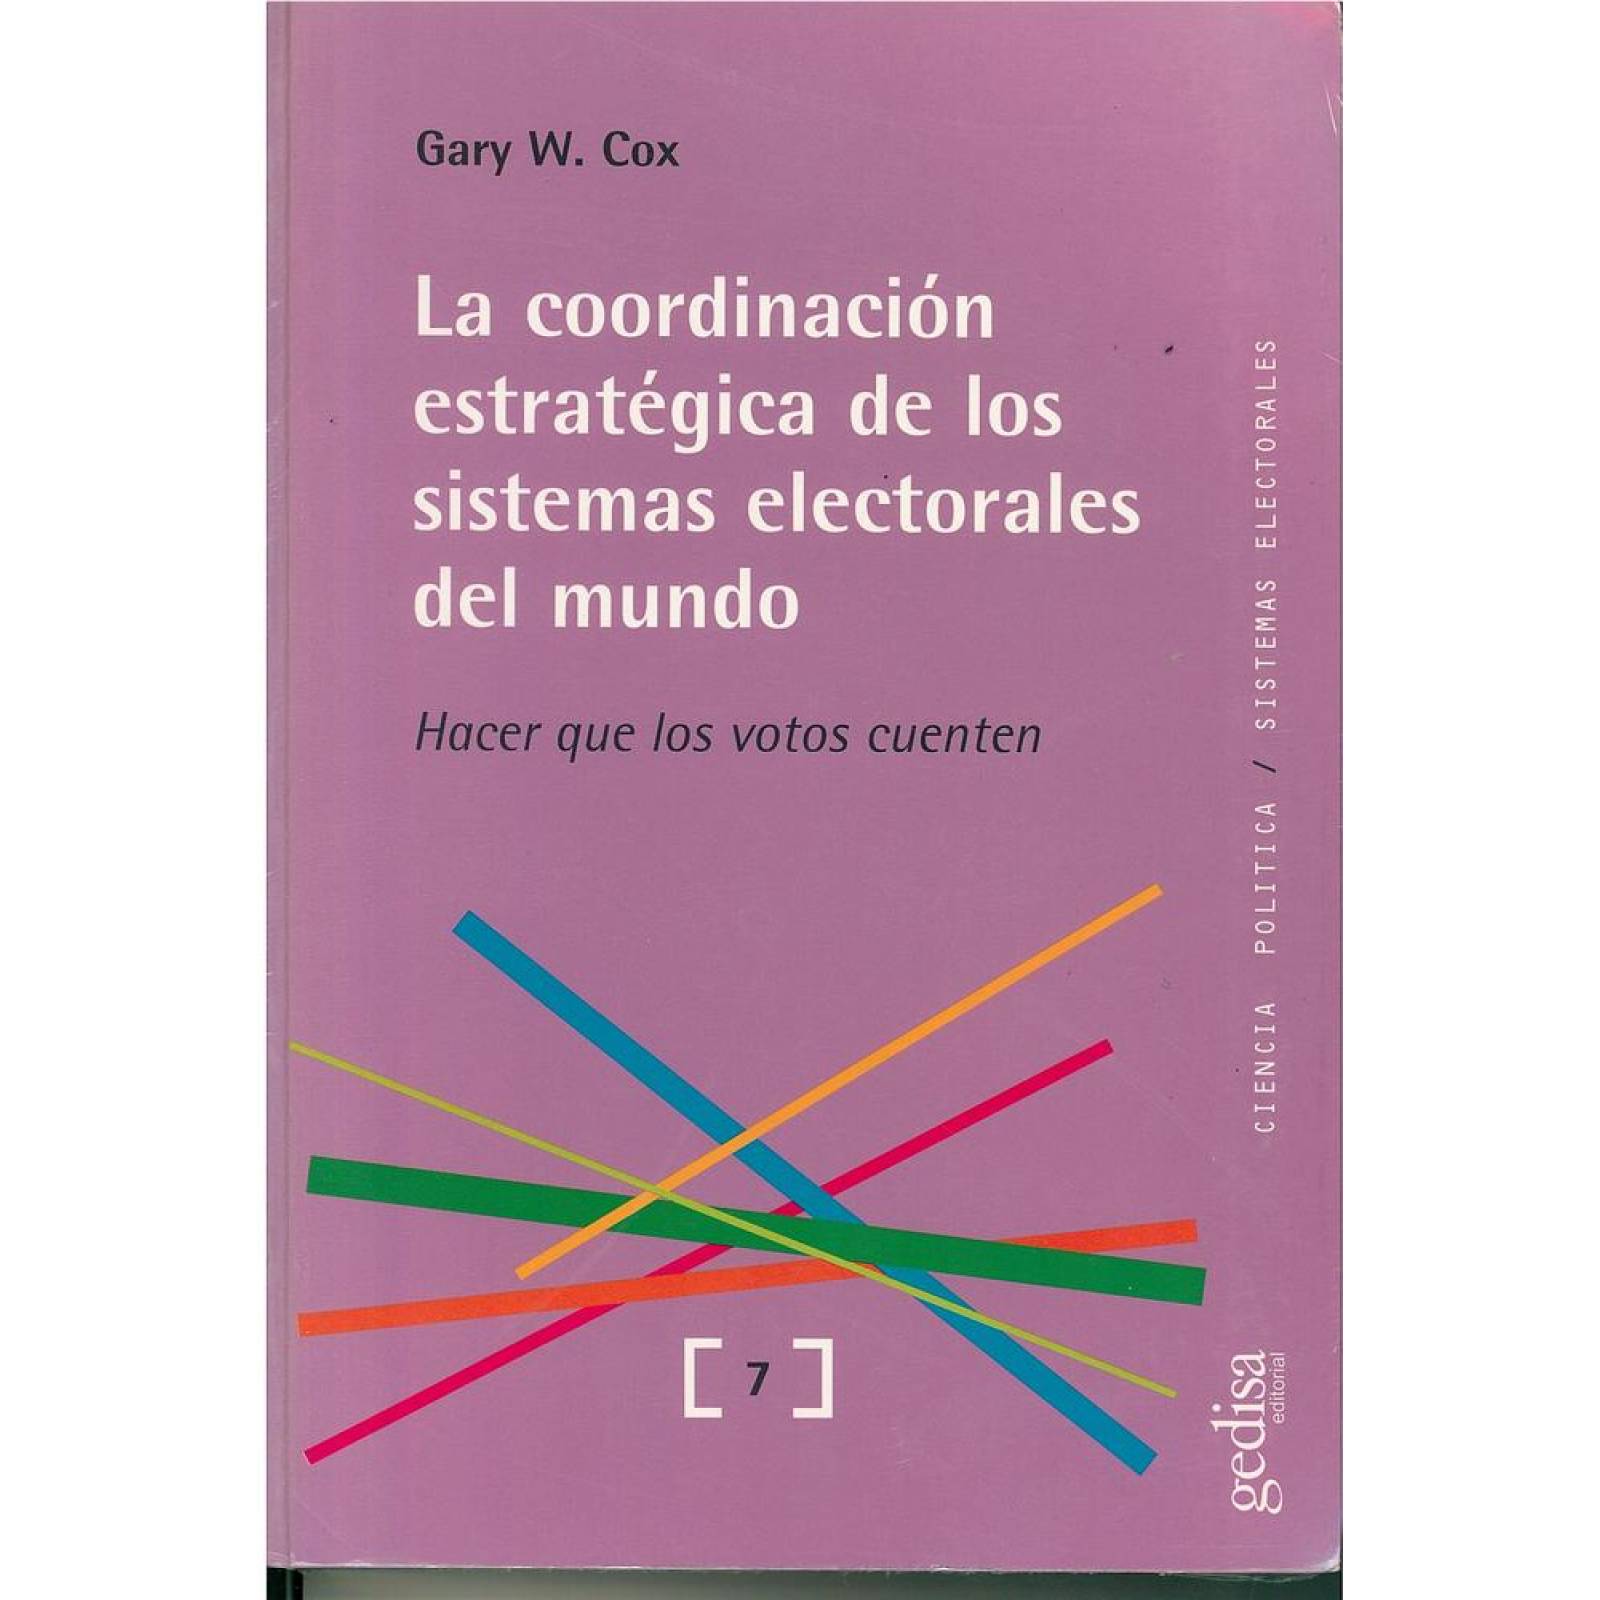 La coordinación estratégica de los sistemas electorales del mundo 